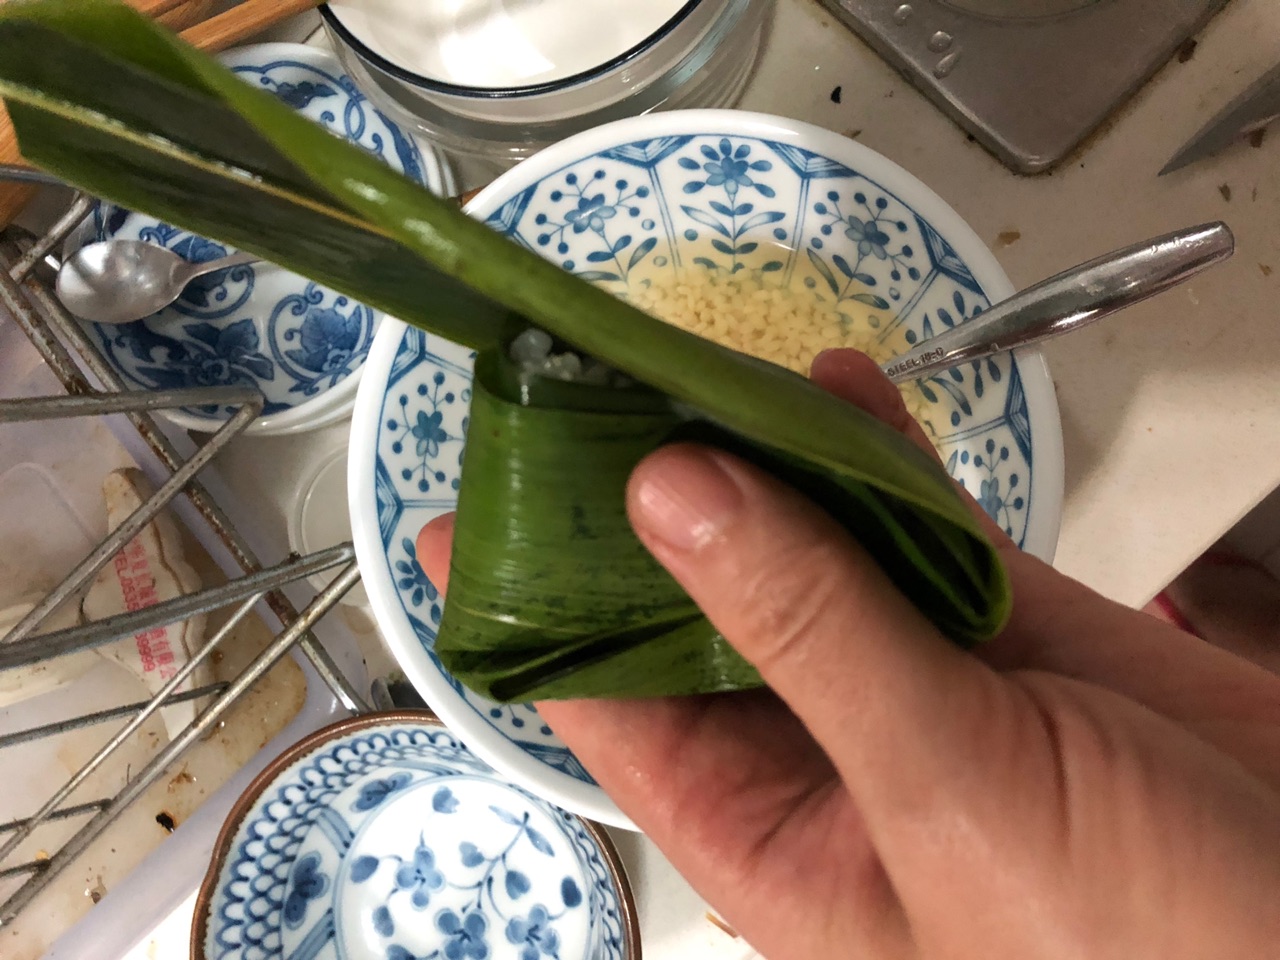 红枣糯米粽子,红枣糯米粽子的家常做法 - 美食杰红枣糯米粽子做法大全